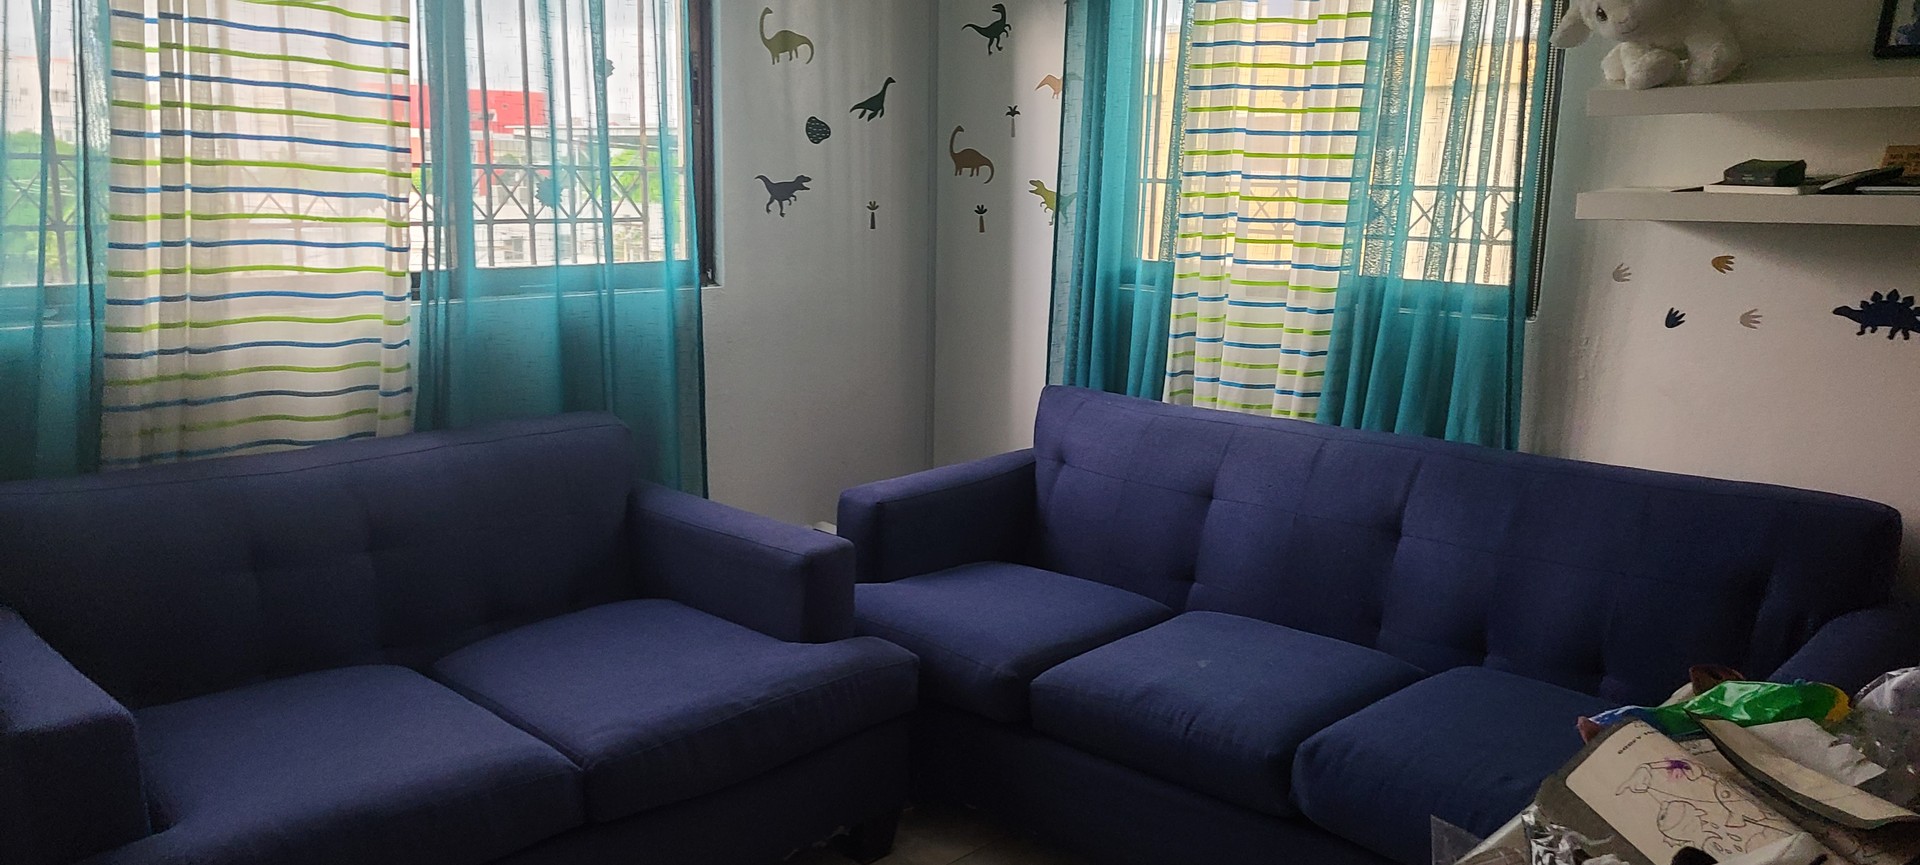 muebles y colchones - Juego de muebles azul oscuro  (1 mueble de 3 plazas y 1 de 2 plazas)  0